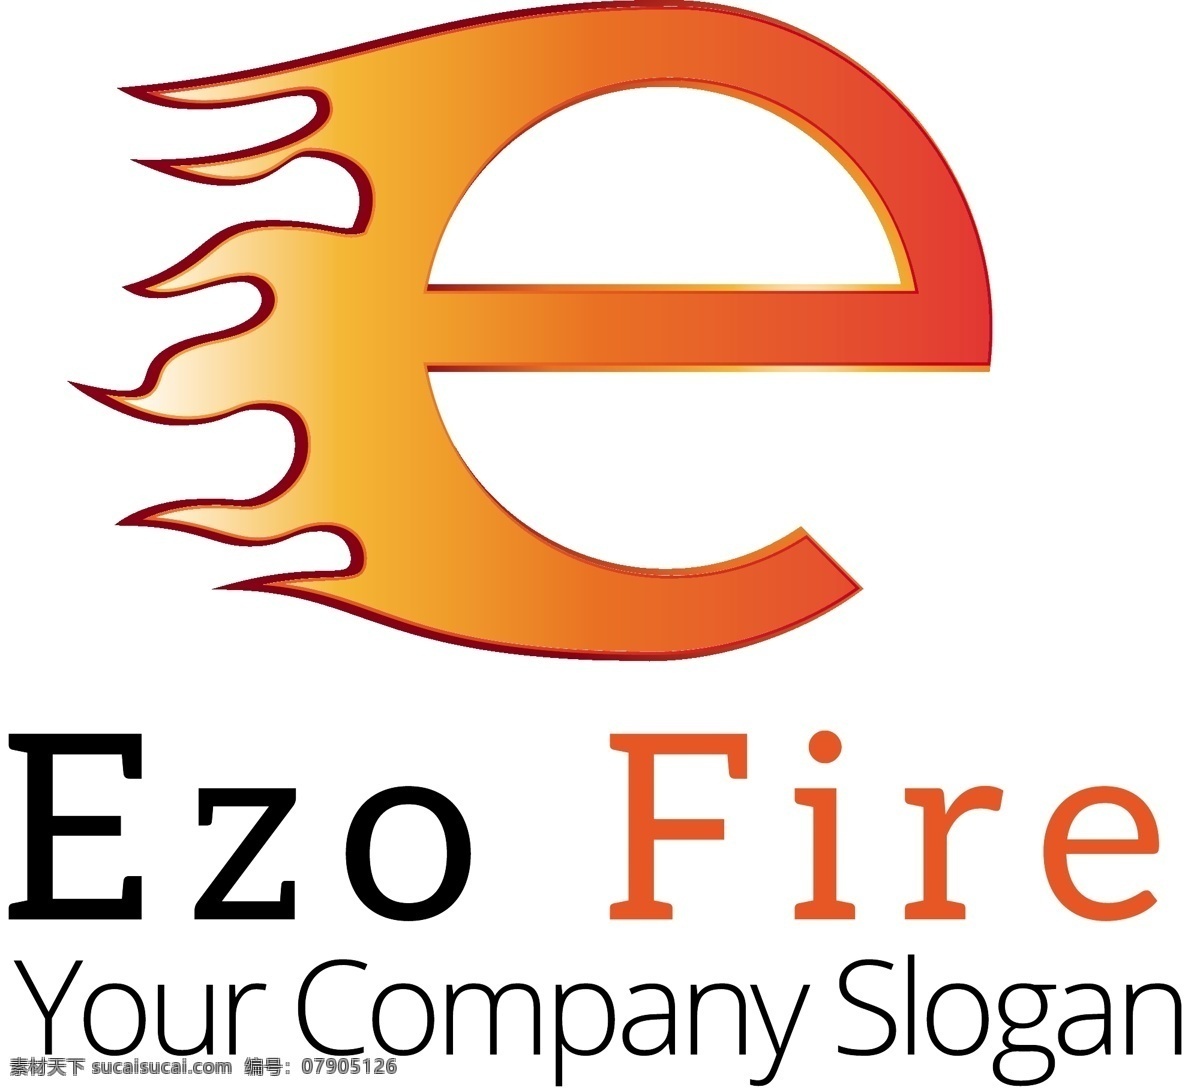 标志 字母 e 火焰 中 标识 业务 消防 营销 形状 企业 公司 品牌 现代 企业标识 商标